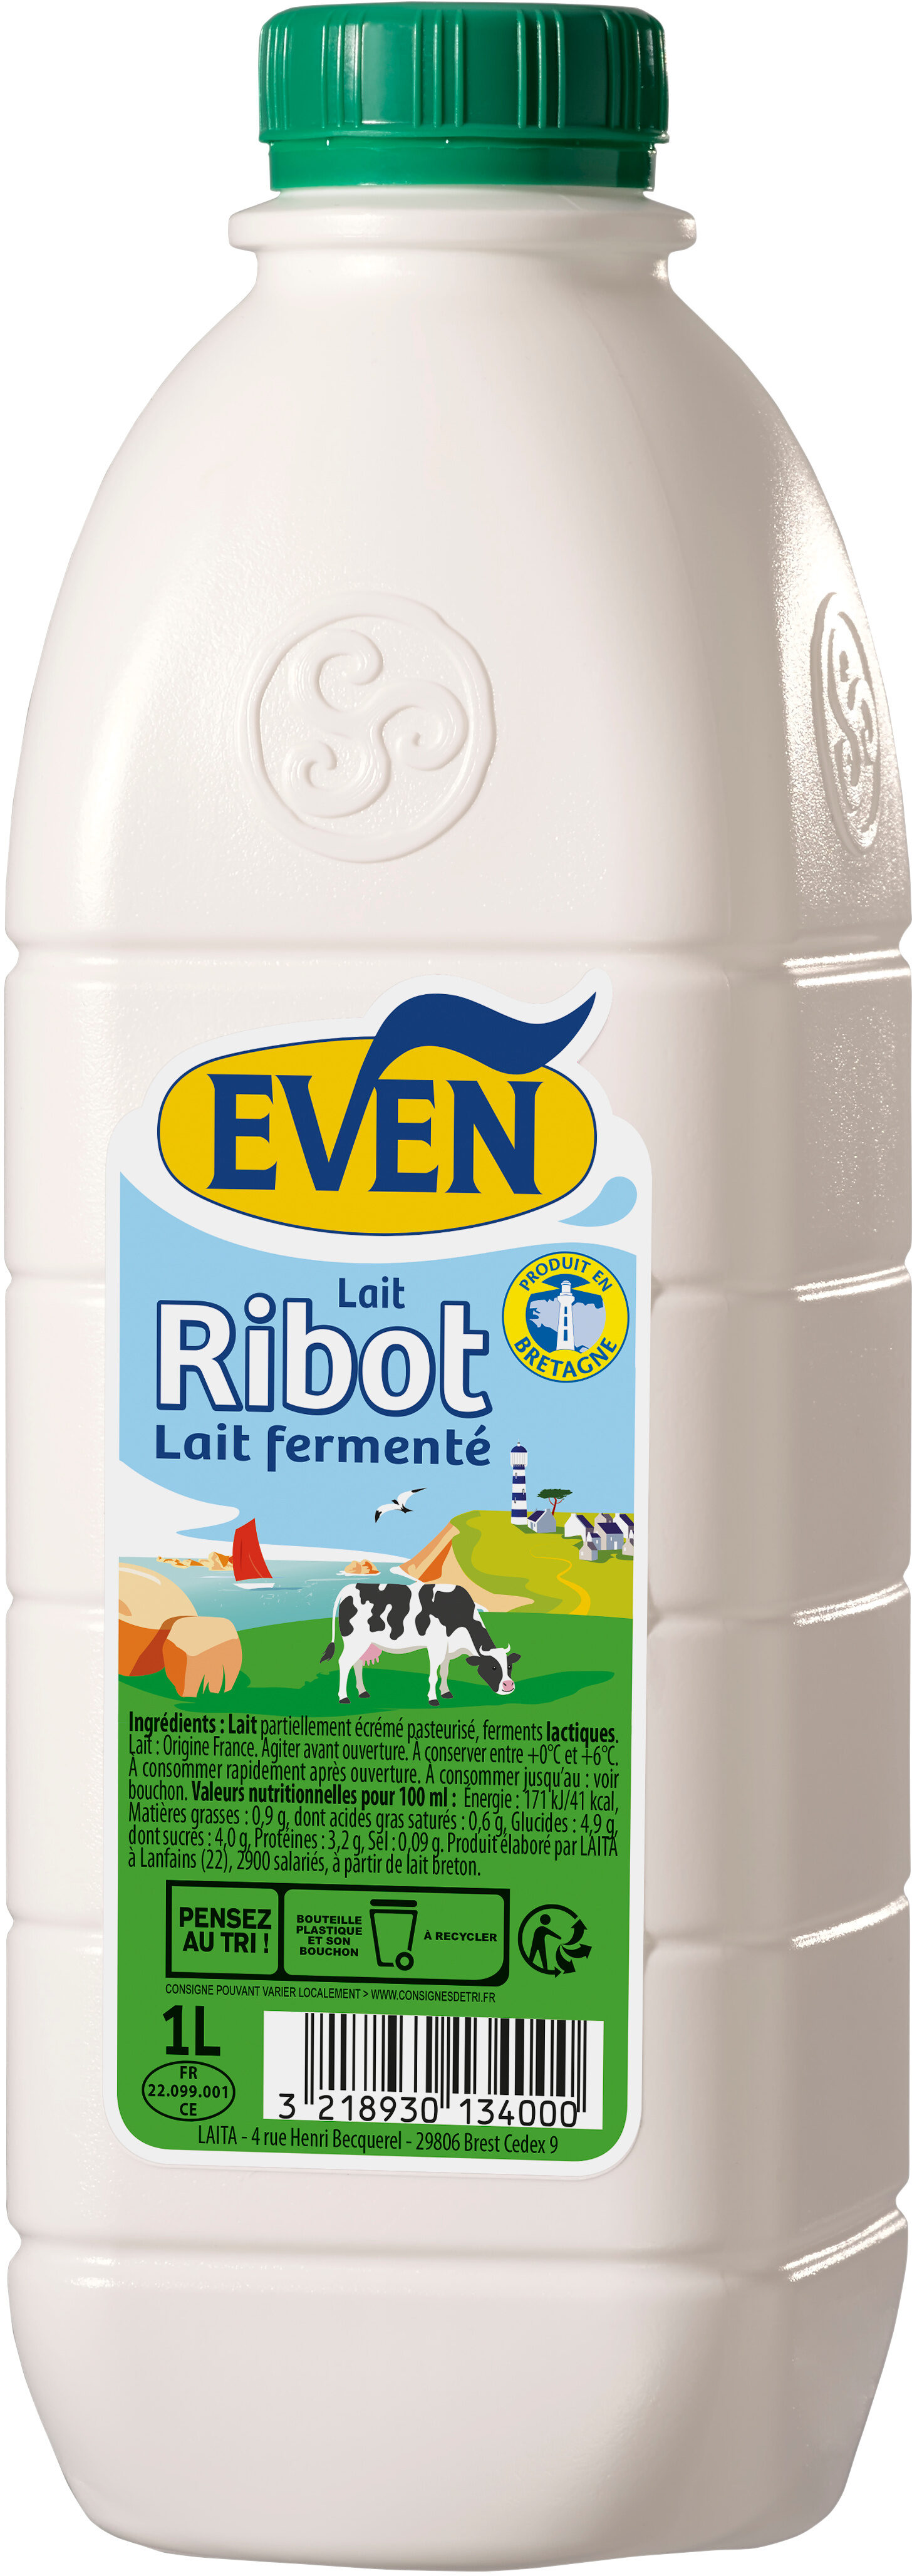 EVEN - Lait Ribot - Lait fermenté - Prodotto - fr